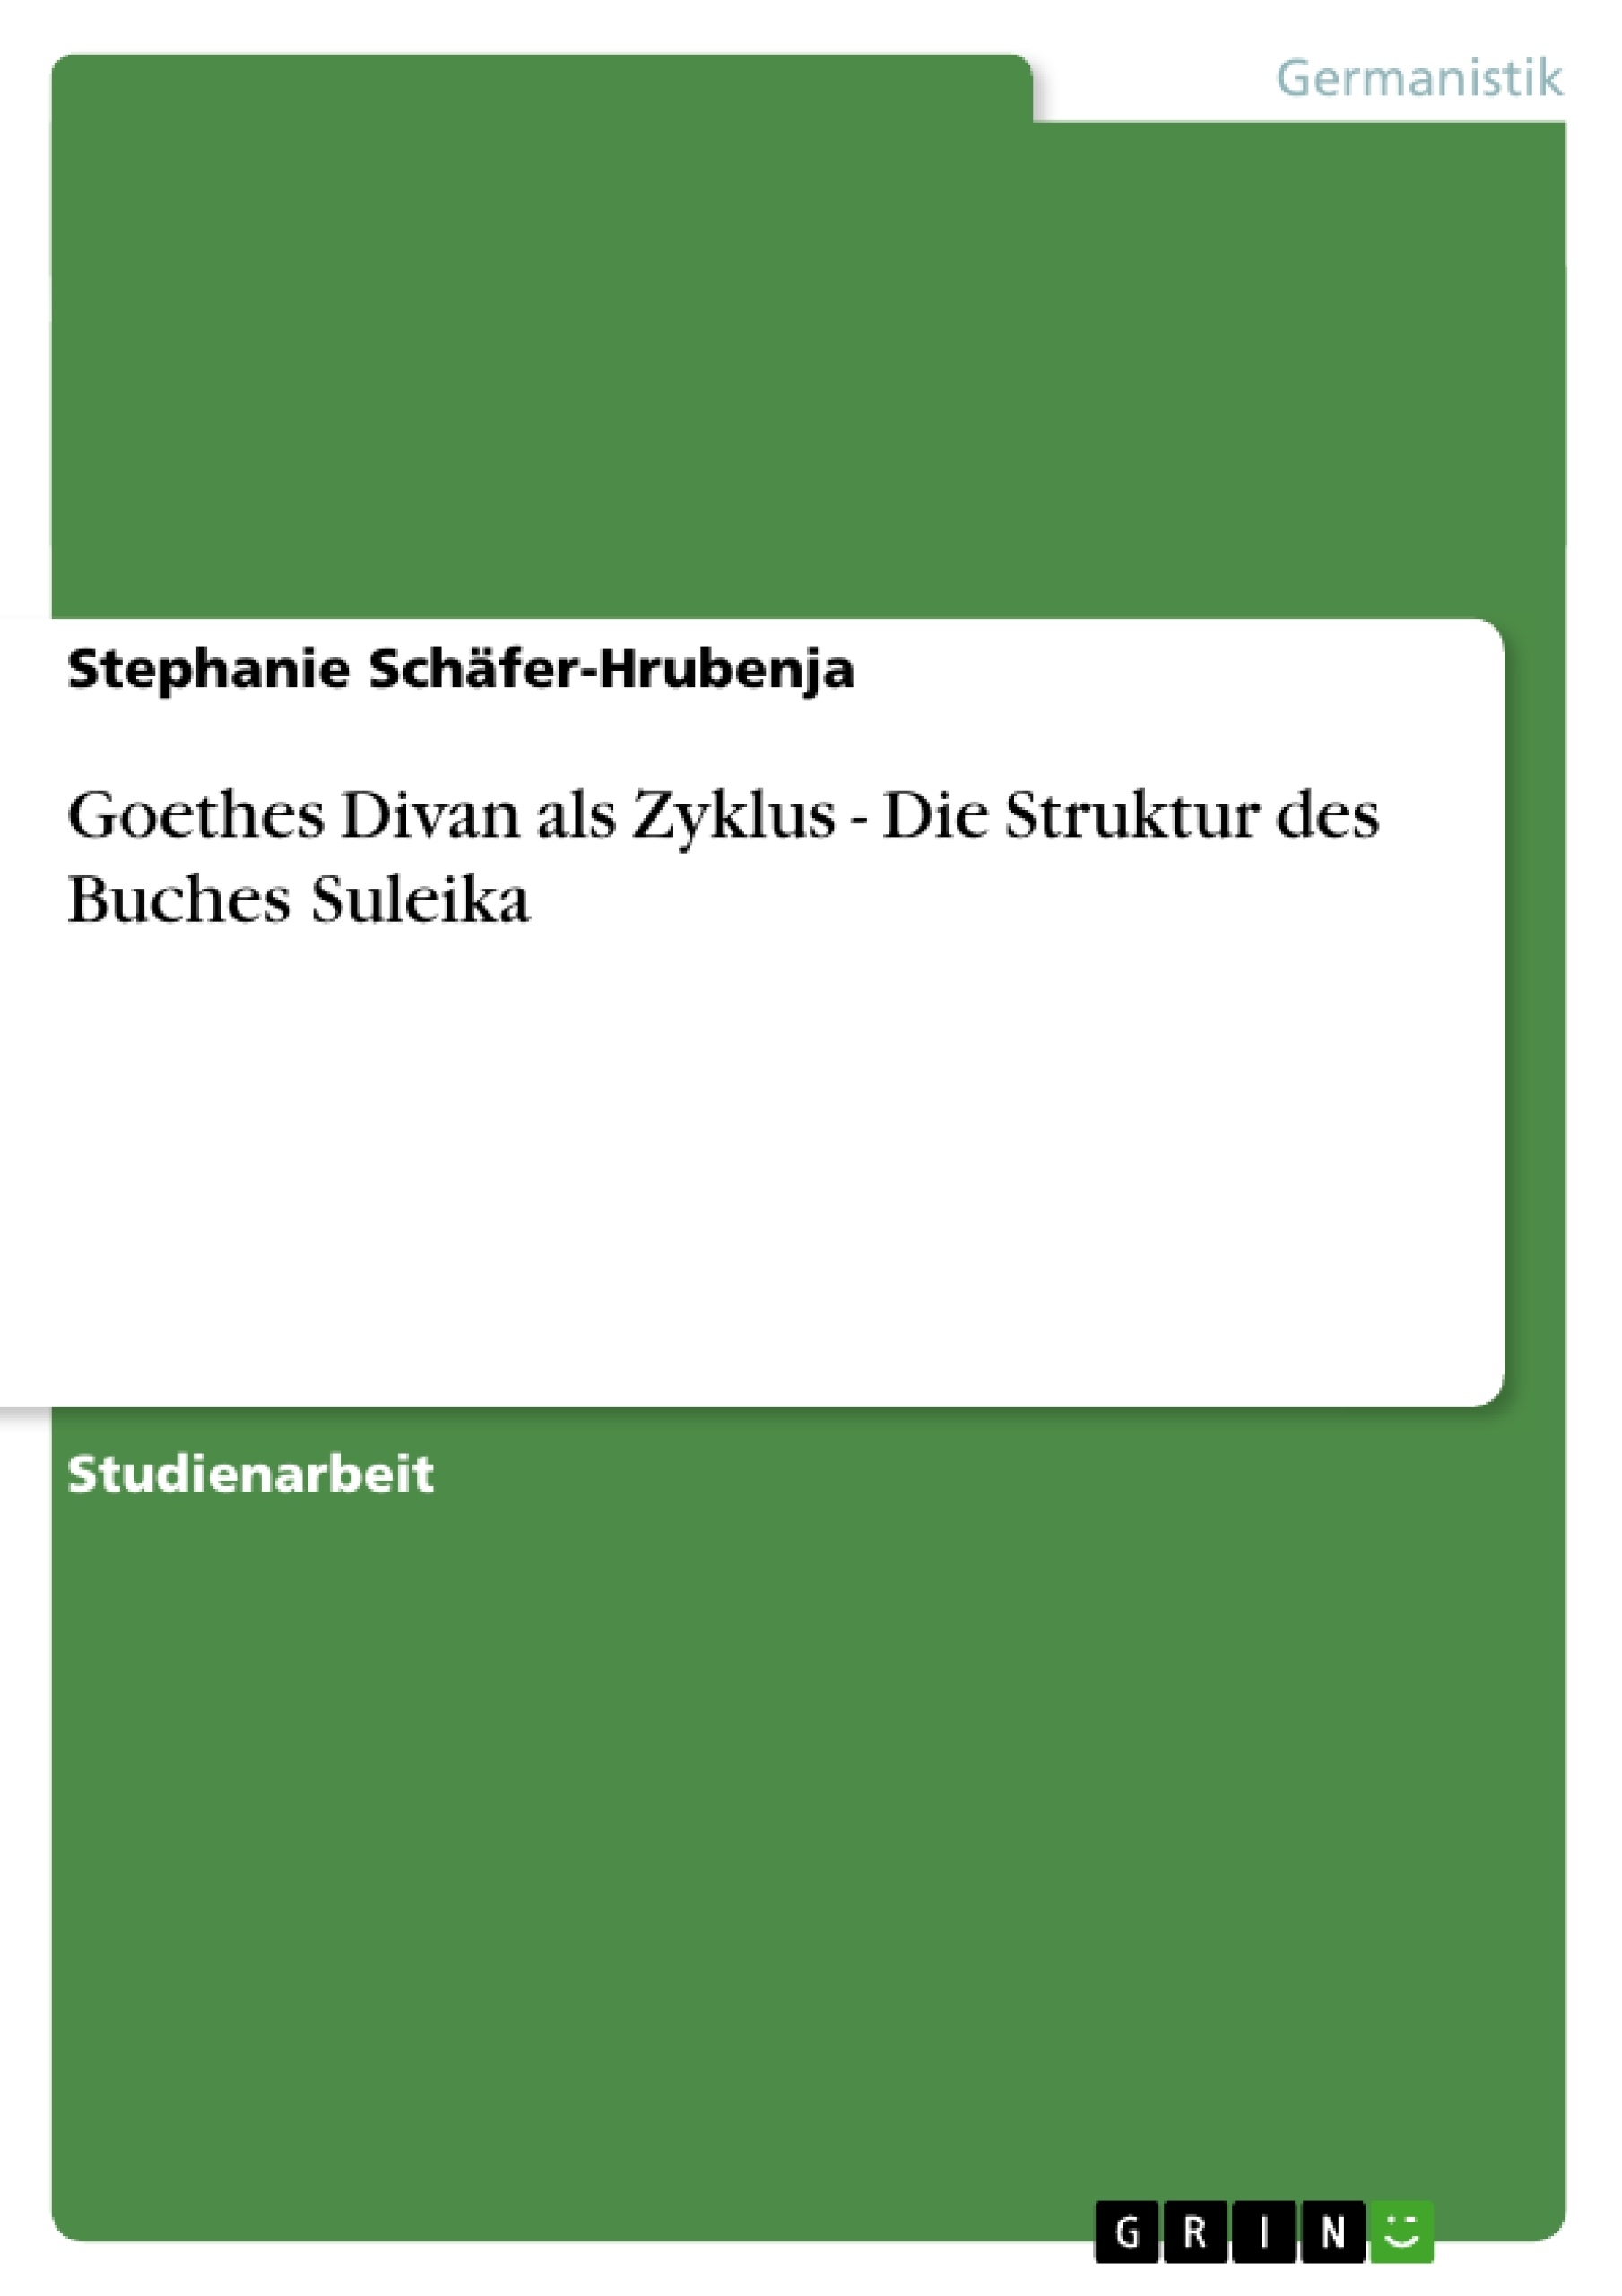 Título: Goethes Divan als Zyklus - Die Struktur des Buches Suleika